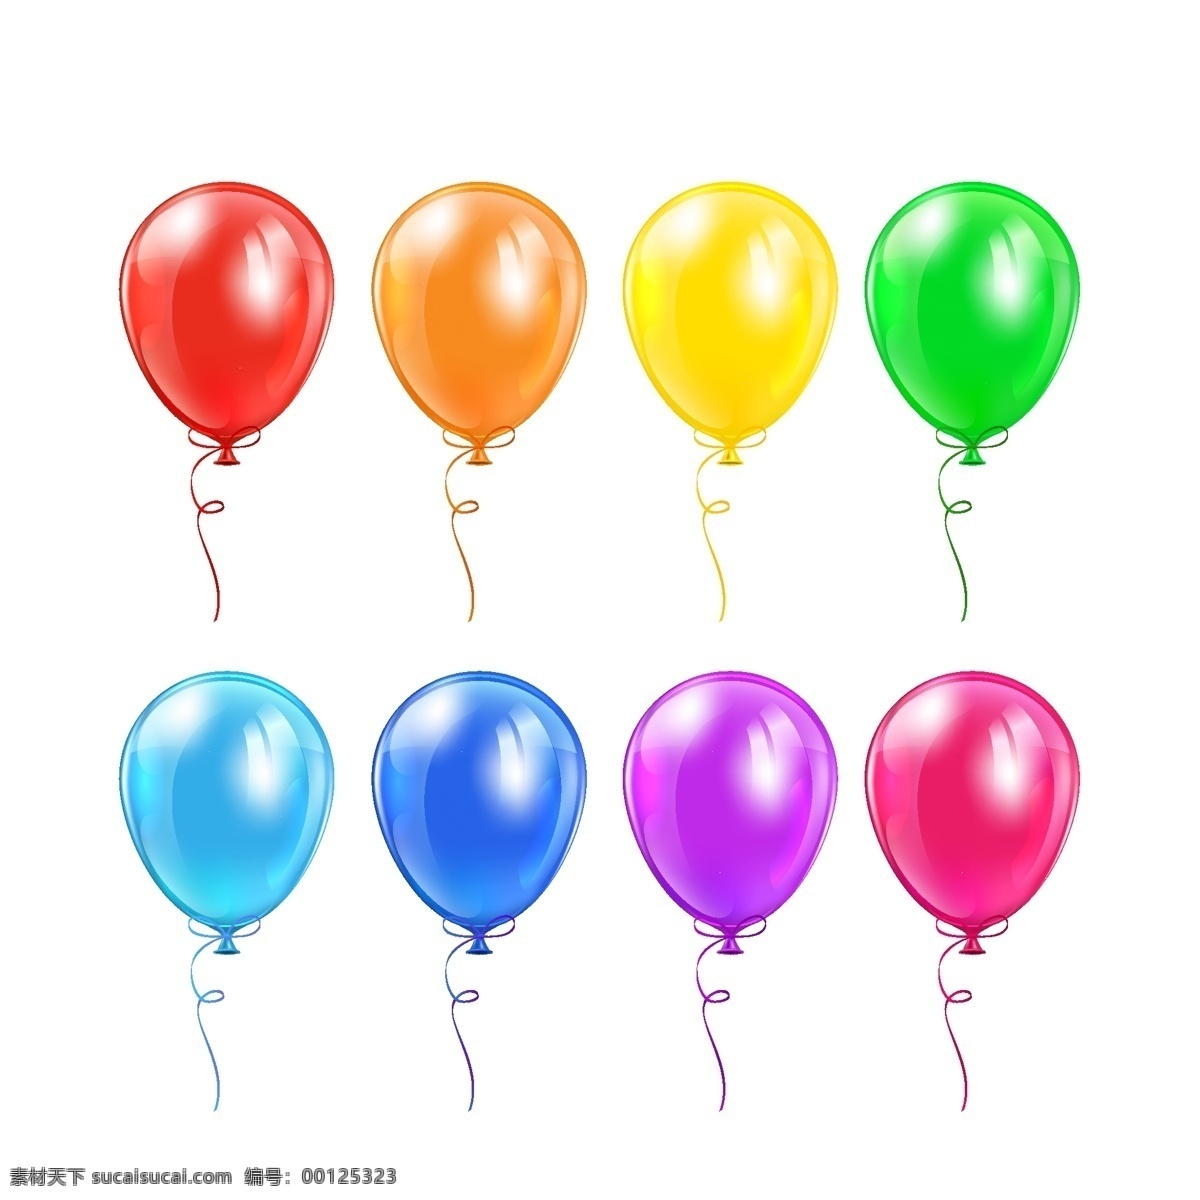 彩色气球 气球 节日 庆祝 贺卡 卡片 轻盈 插画 背景 海报 画册 矢量节日 文化艺术 节日庆祝 白色